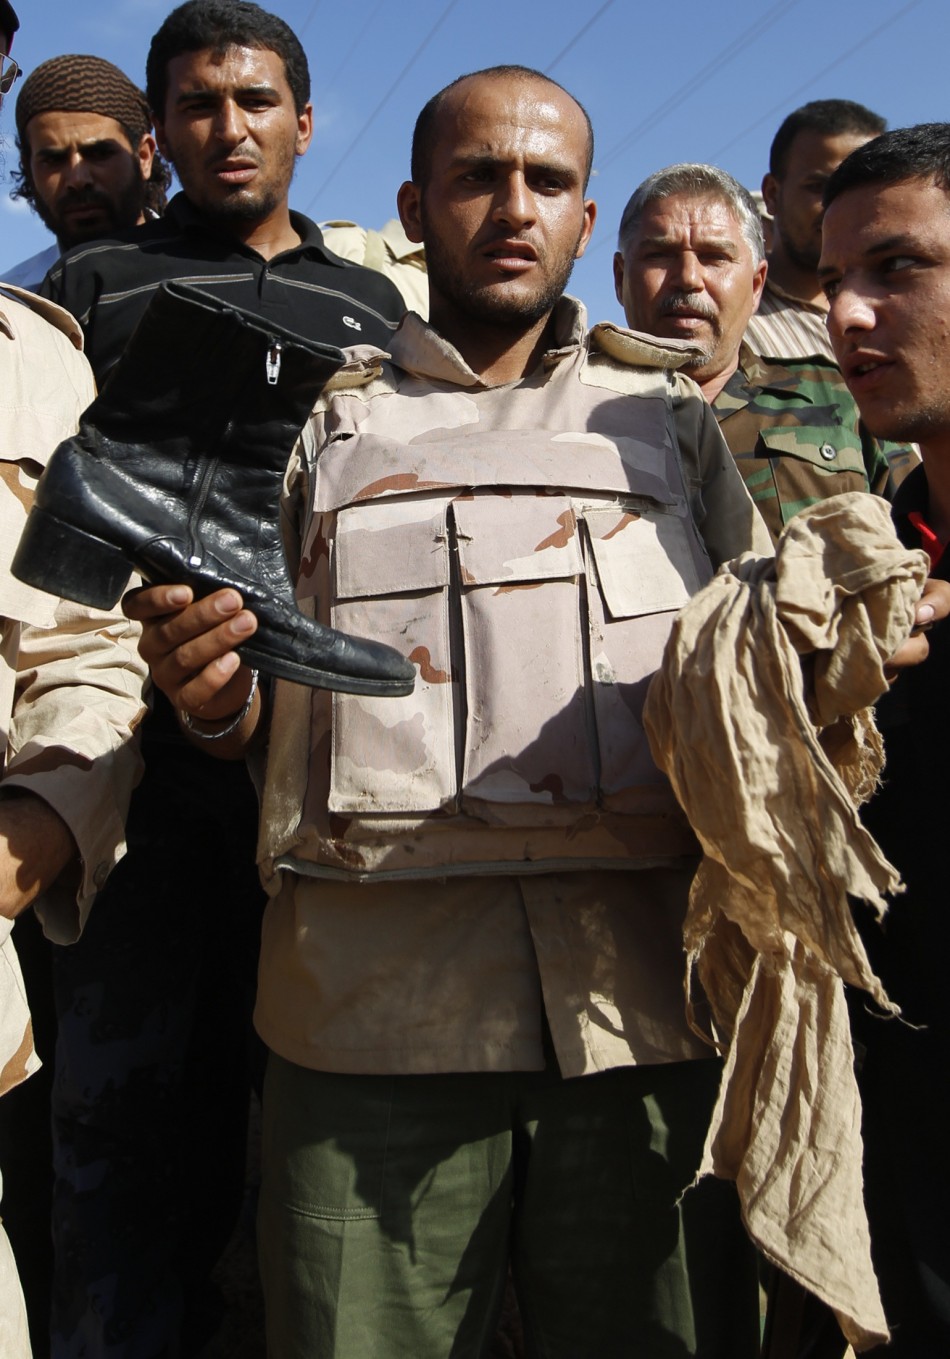 Anti-Gaddafi fighter shows the media clothes of Muammar Gaddafi near Sirte